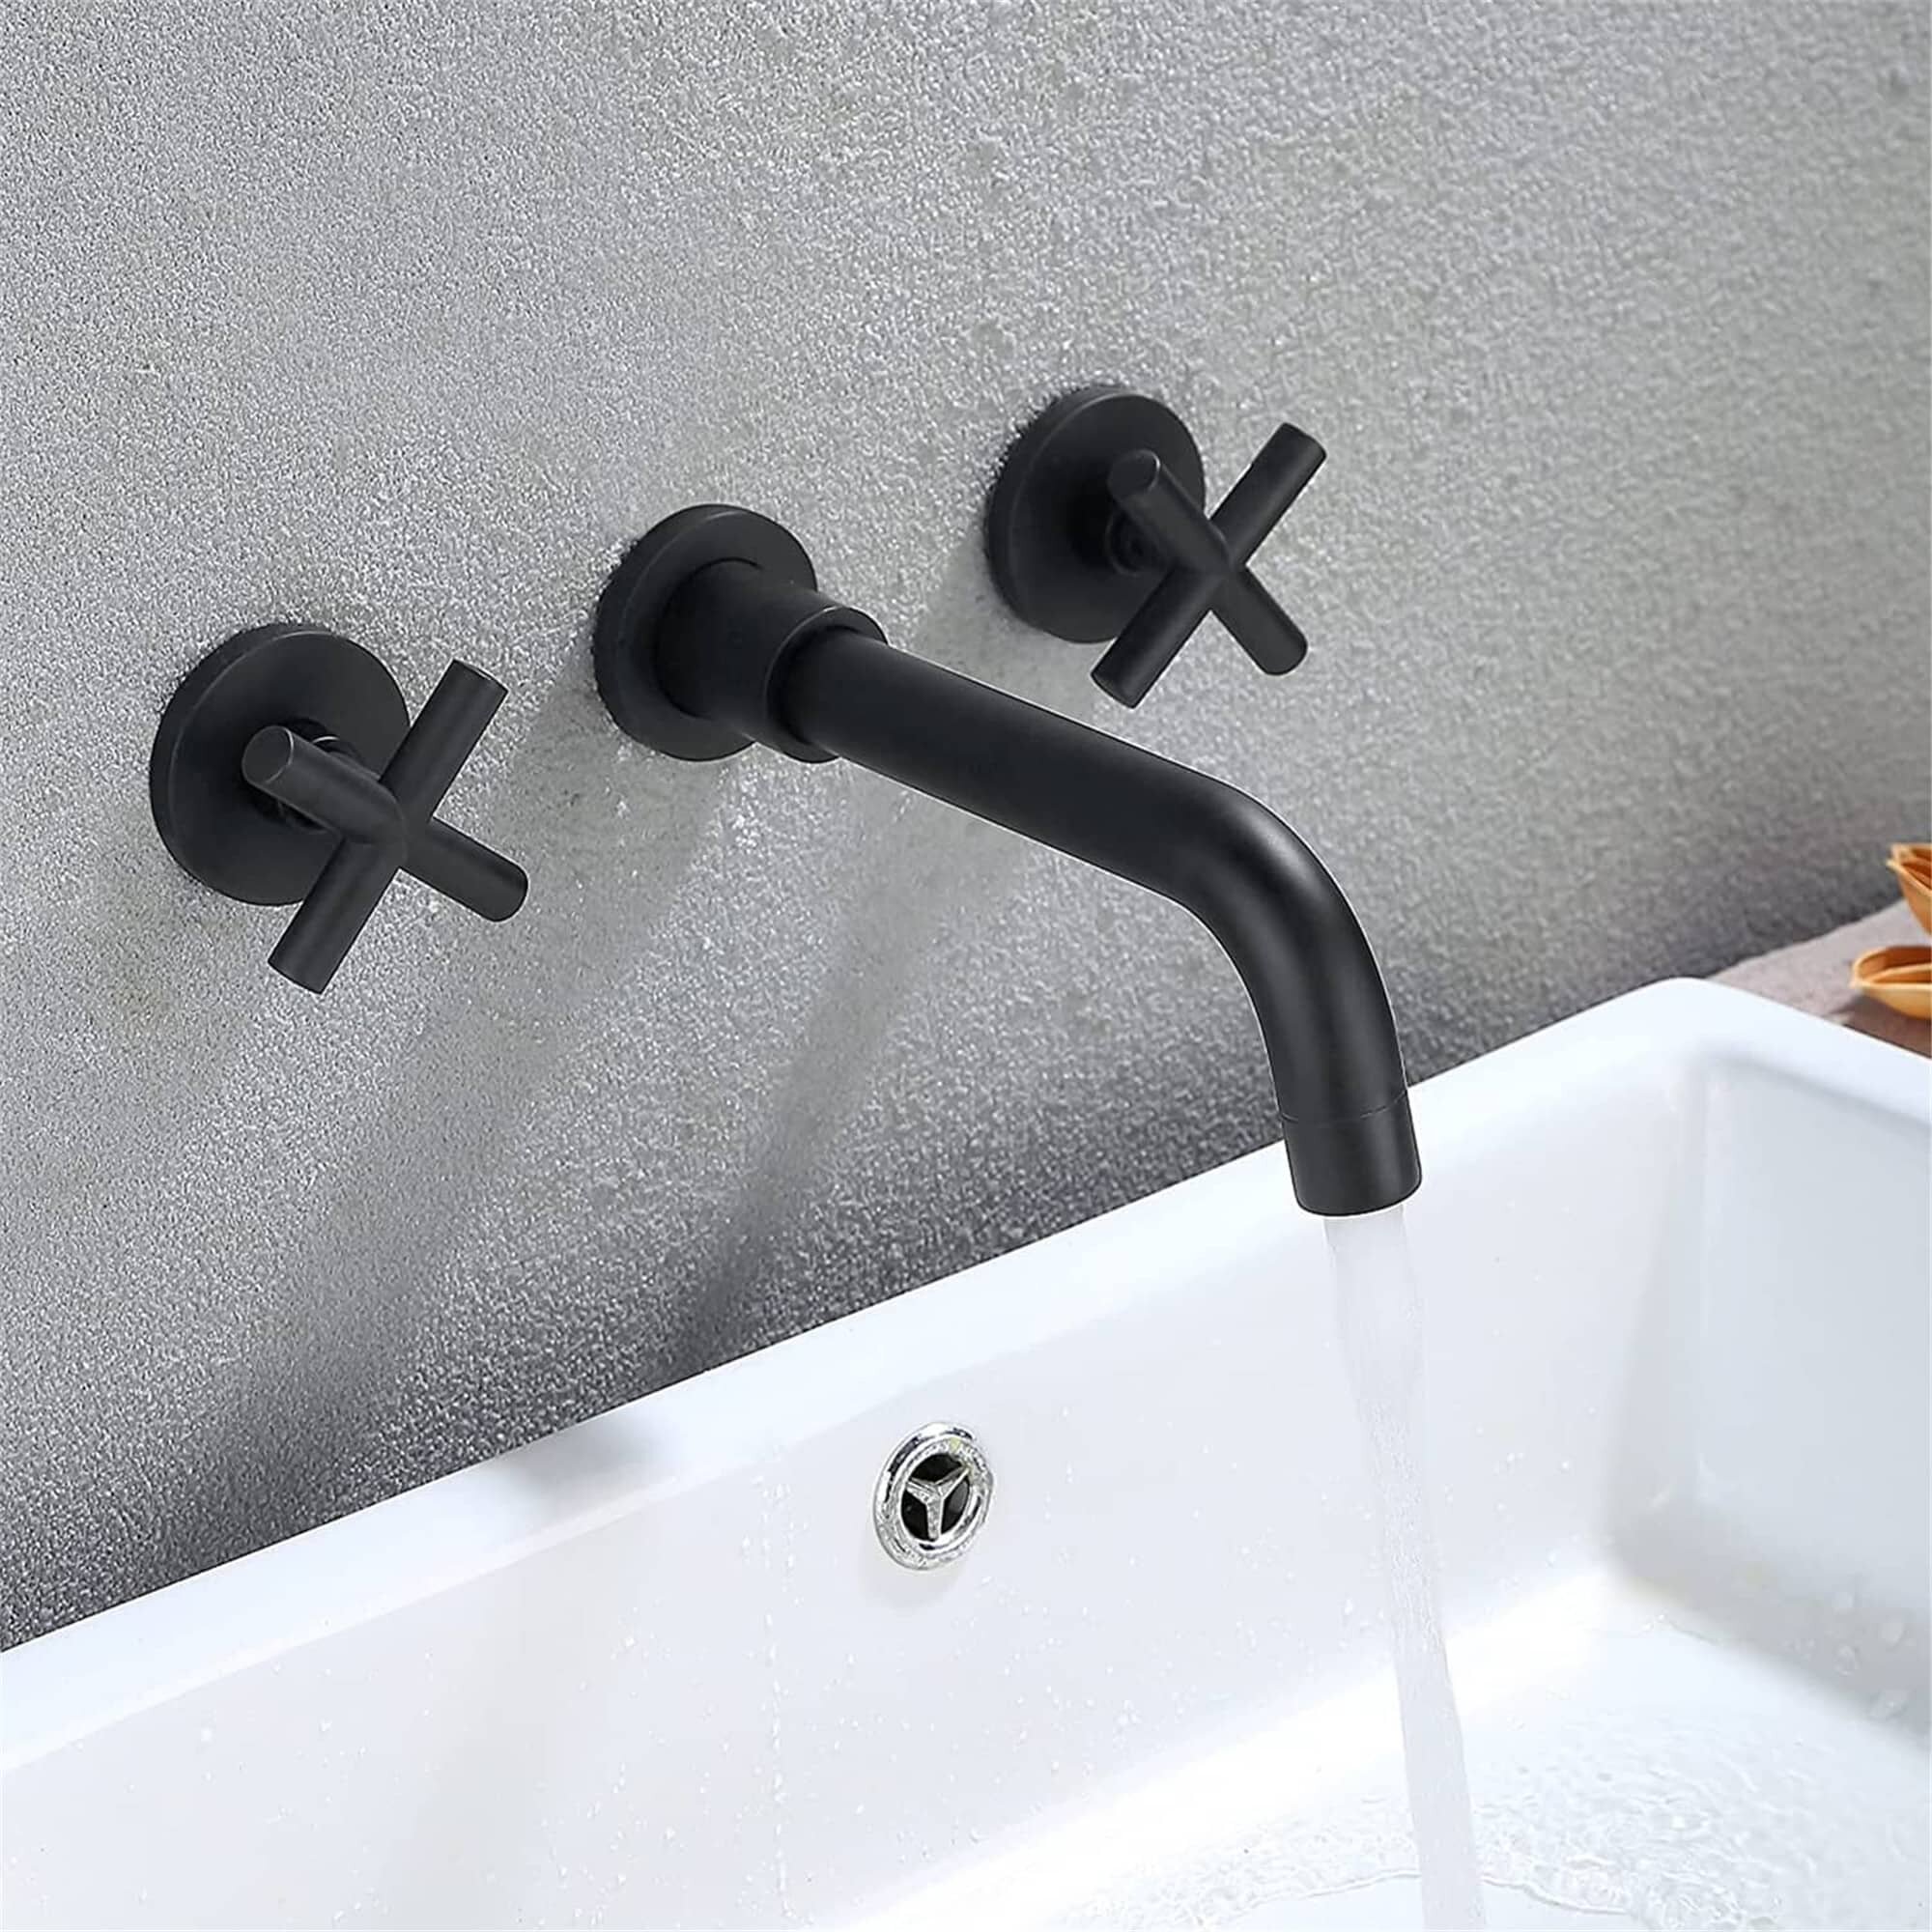 2 Hole Wall Mount Bathroom Basin Sink Mixer Matte Black Faucet 1 Handl Brass Tap 